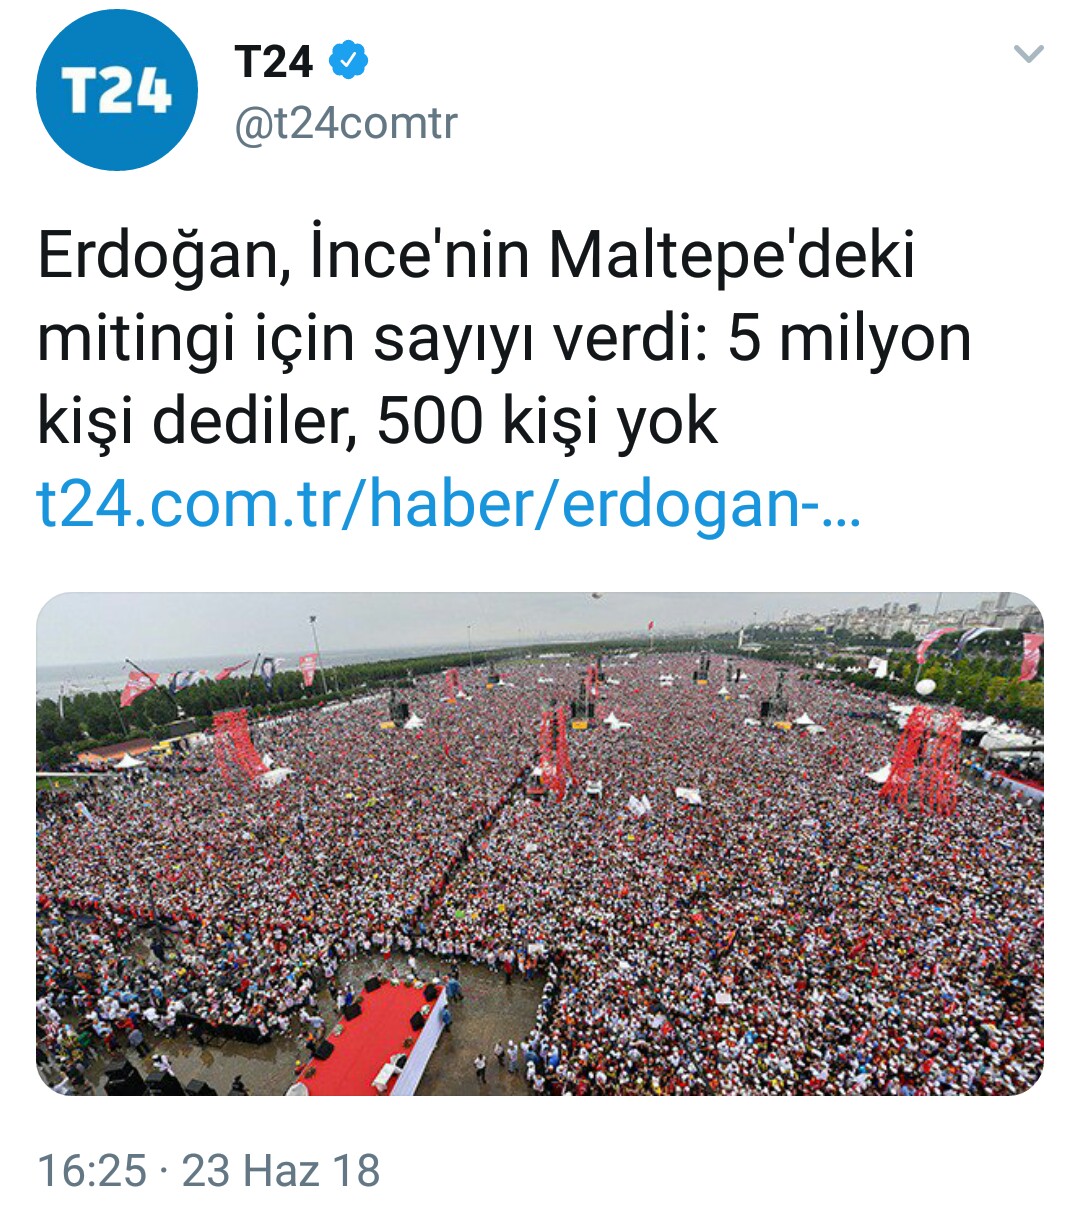 zaytung fotohaber cumhurbaskani erdogan ekonomiye olan guveninin nedenleri konusunda ipucu verdi 450 milyar dolar dis borcu da boyle sayiyorsa demek